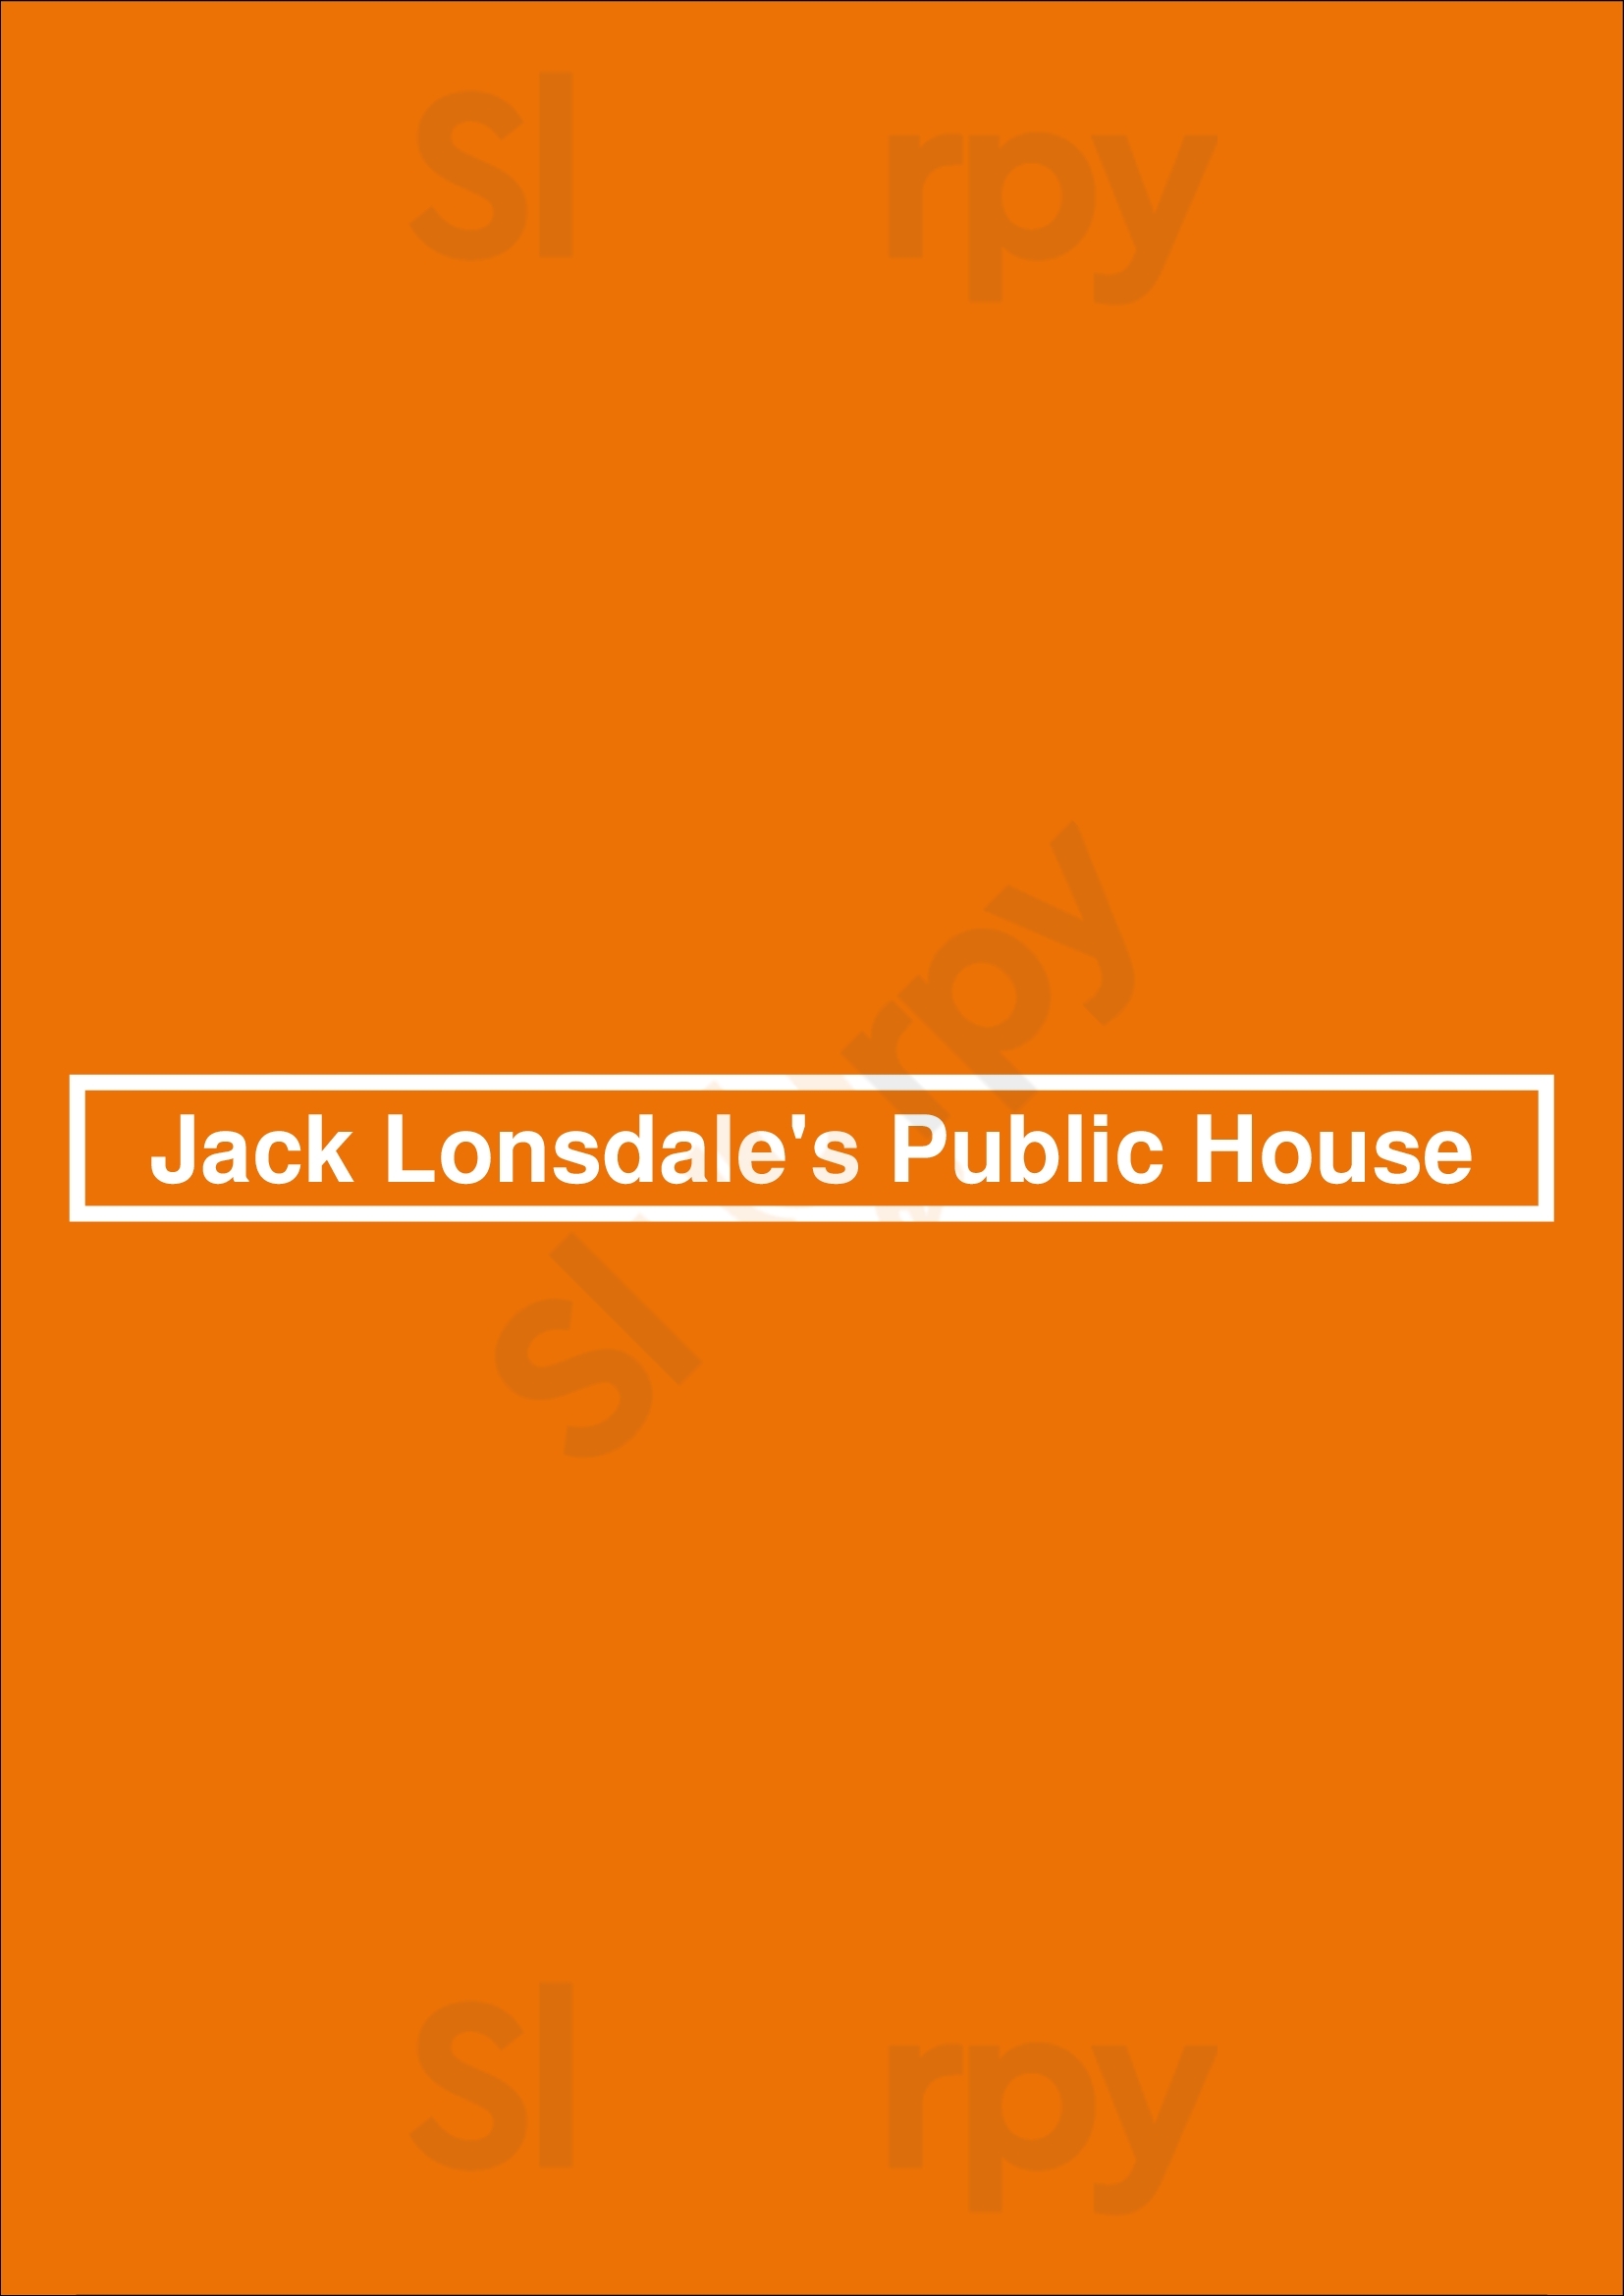 Jack Lonsdale's Public House North Vancouver Menu - 1